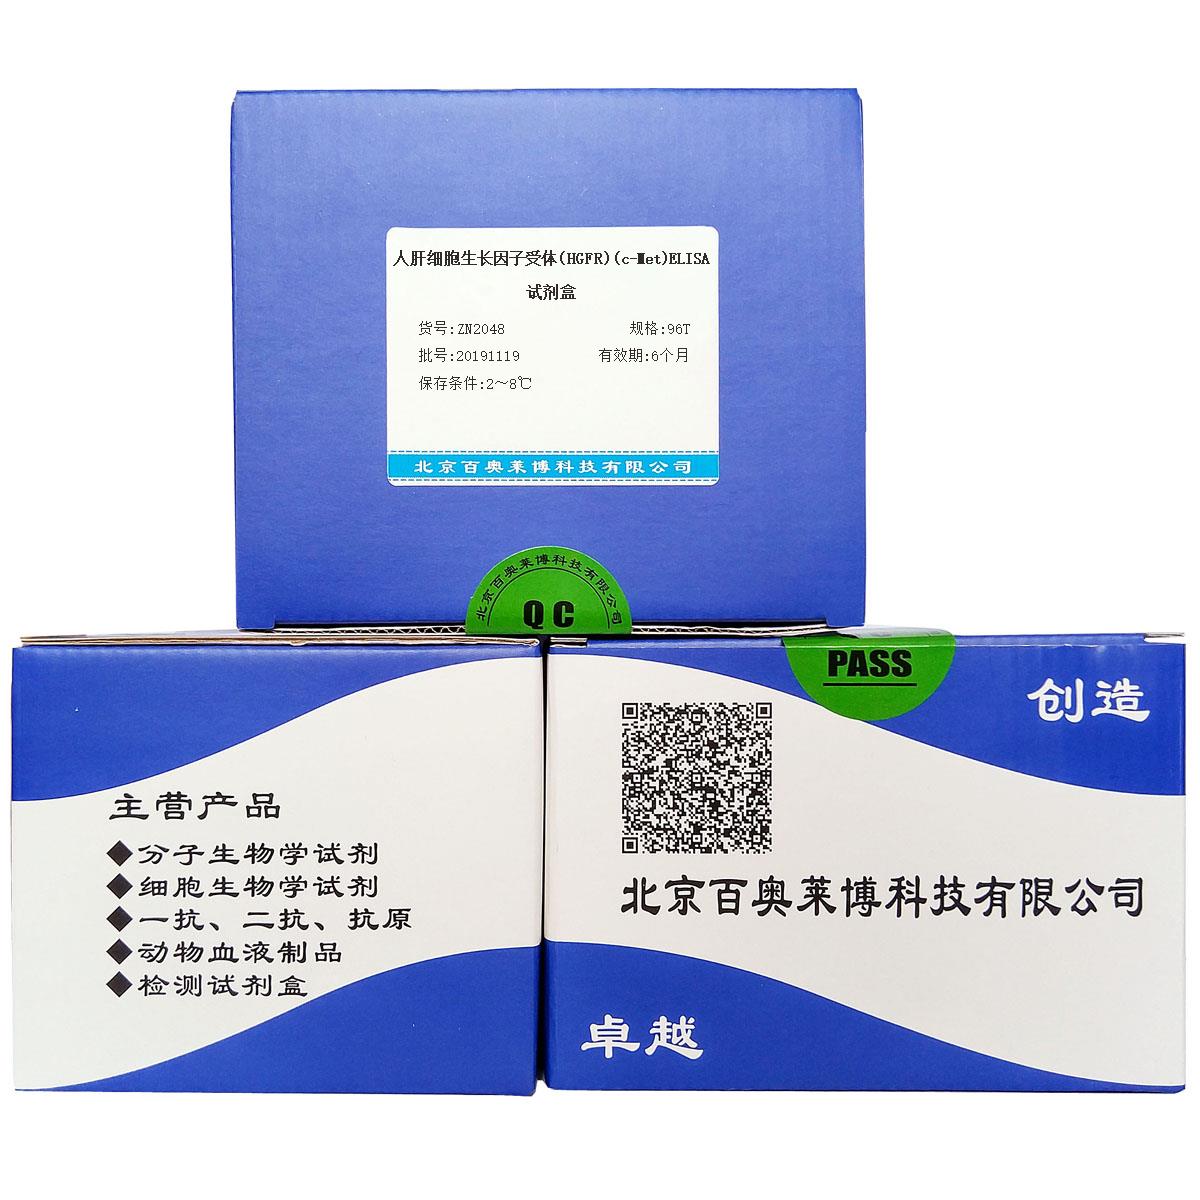 人肝细胞生长因子受体(HGFR)(c-Met)ELISA试剂盒